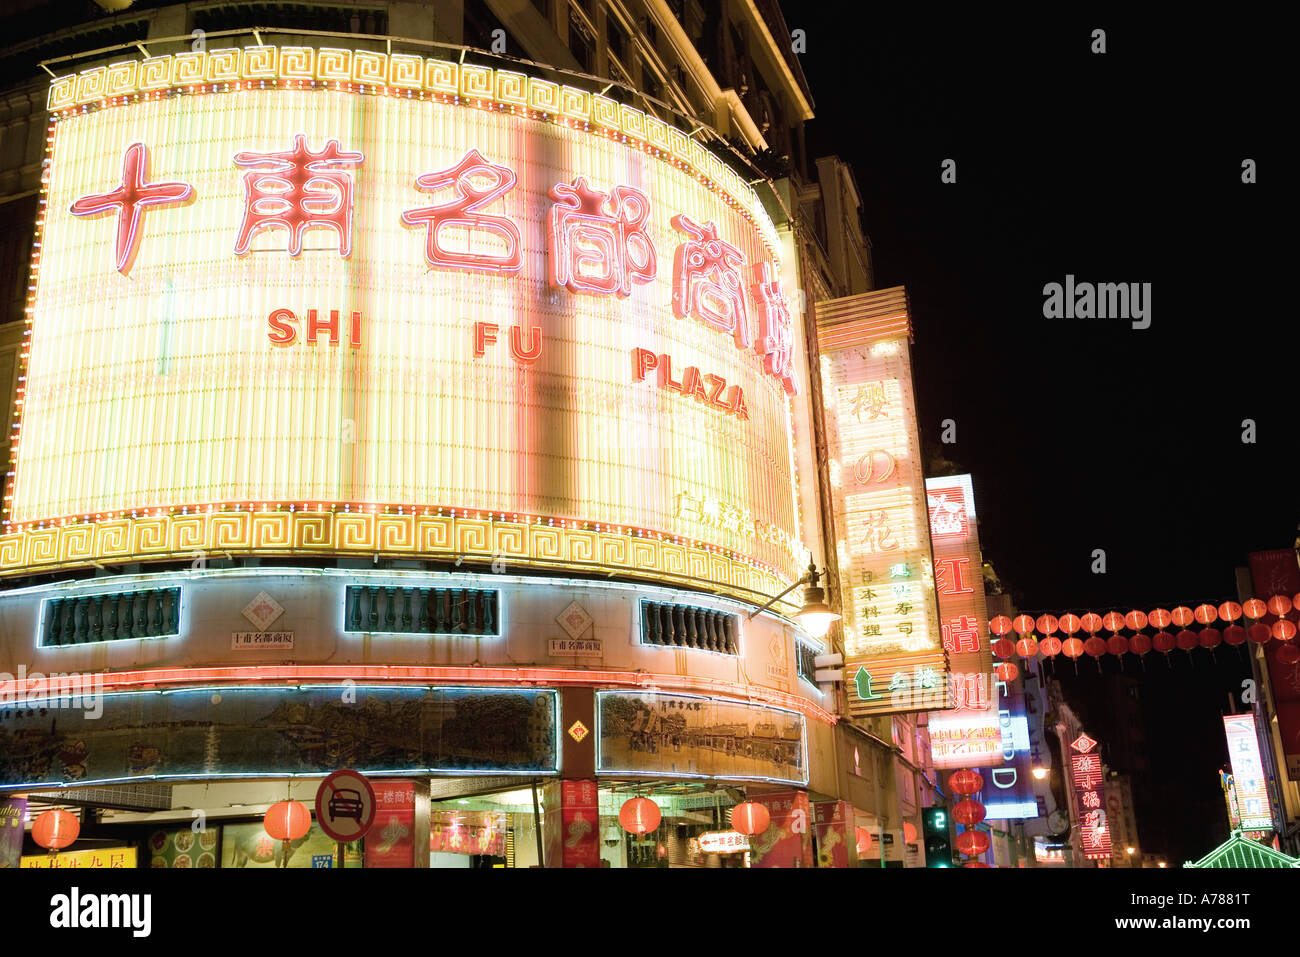 China, Guangzhou, Shifu Plaza sign at night Stock Photo